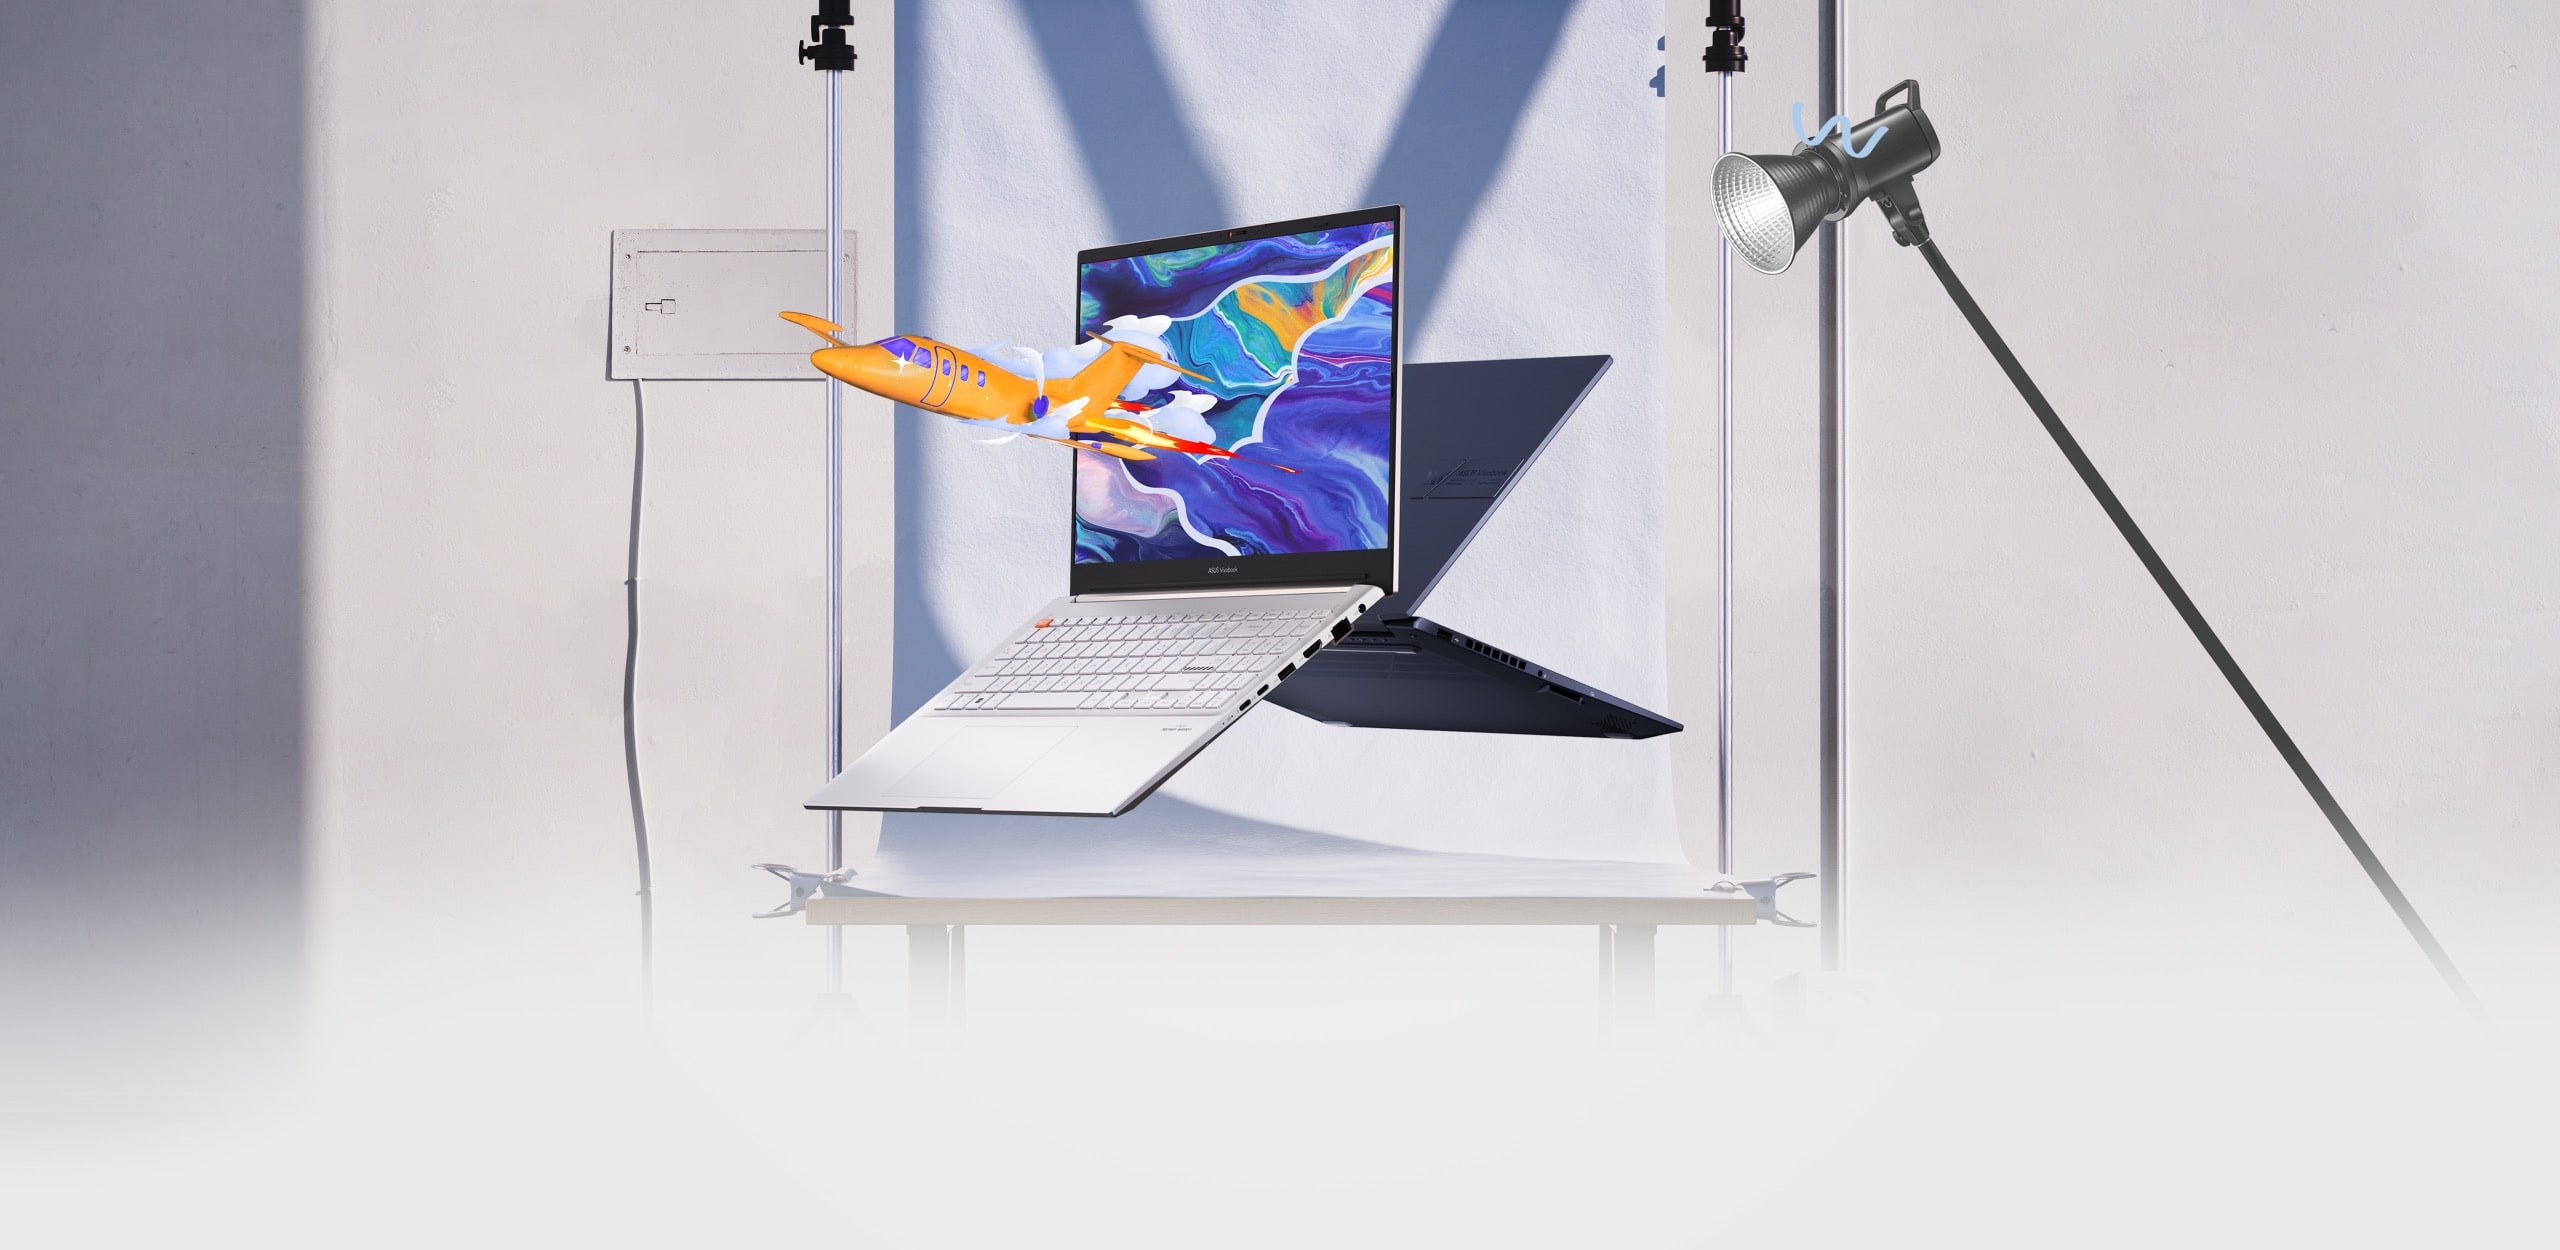 Два ноутбука Vivobook Pro 15 OLED показаны спереди и сзади. Из экрана одного вылетает самолет